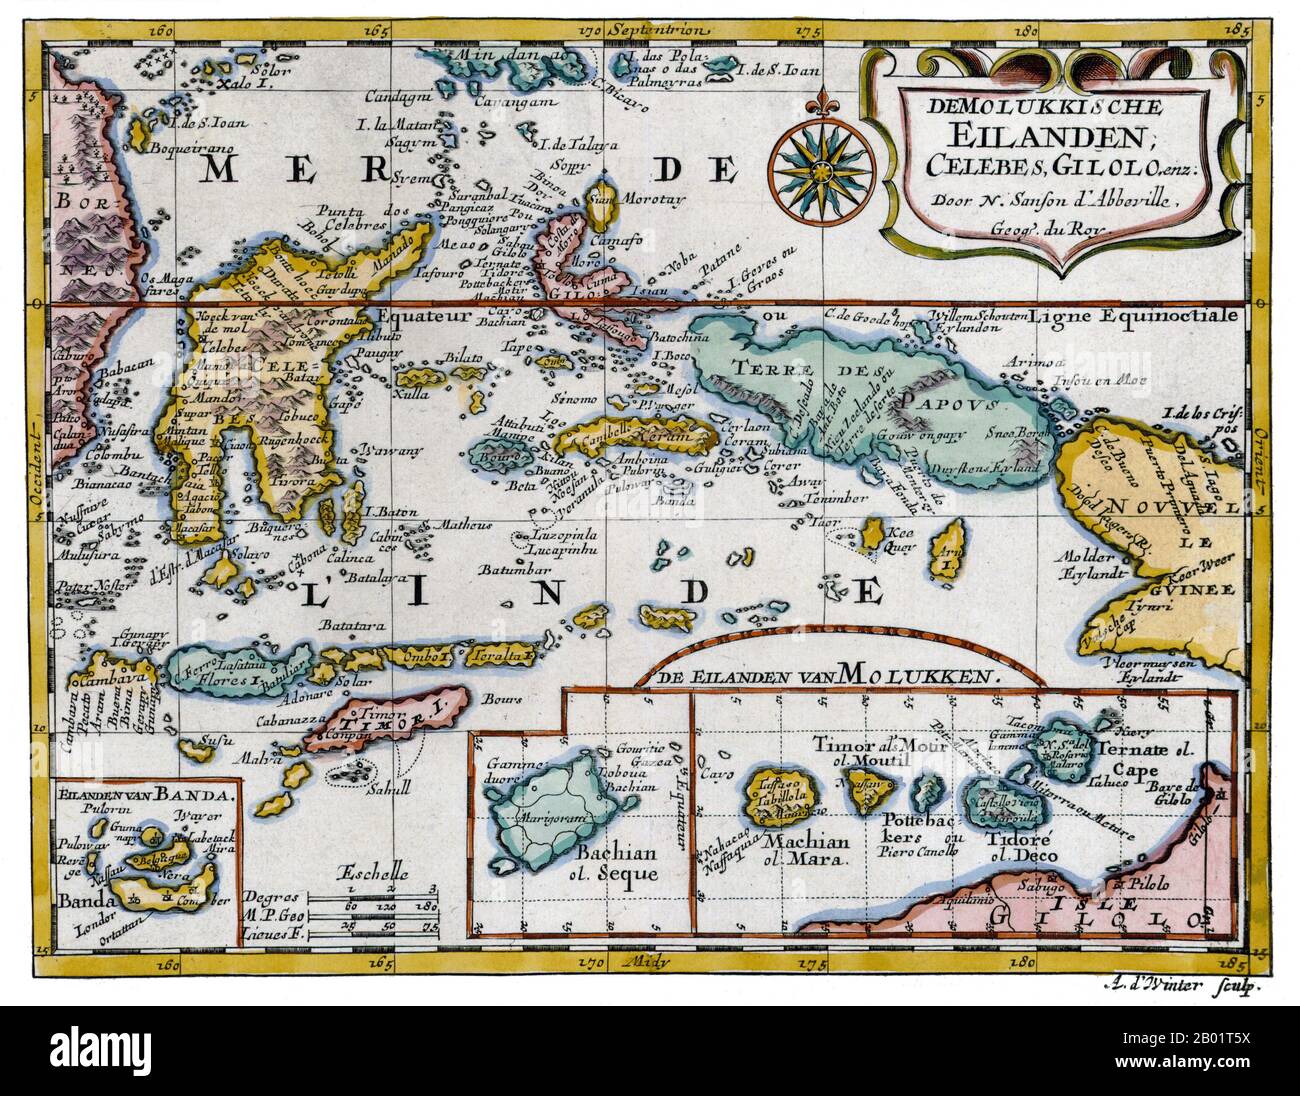 Indonesia: "Mioluccas, Celebes, Gilolo". Mappa Copperplate di Nicolas Sanson, Utrecht, 1683. Le Isole Maluku (note anche come Molucche, Molucche e Spice Islands) sono un arcipelago che fa parte dell'Indonesia e della più grande regione marittima del Sud-est asiatico. Tettonicamente si trovano sulla placca di Halmahera all'interno della Molucca Sea Collision zone. Geograficamente si trovano ad est di Sulawesi (Celebes), ad ovest della nuova Guinea e a nord e ad est di Timor. La maggior parte delle isole sono montuose, alcune con vulcani attivi, e godono di un clima umido. Foto Stock